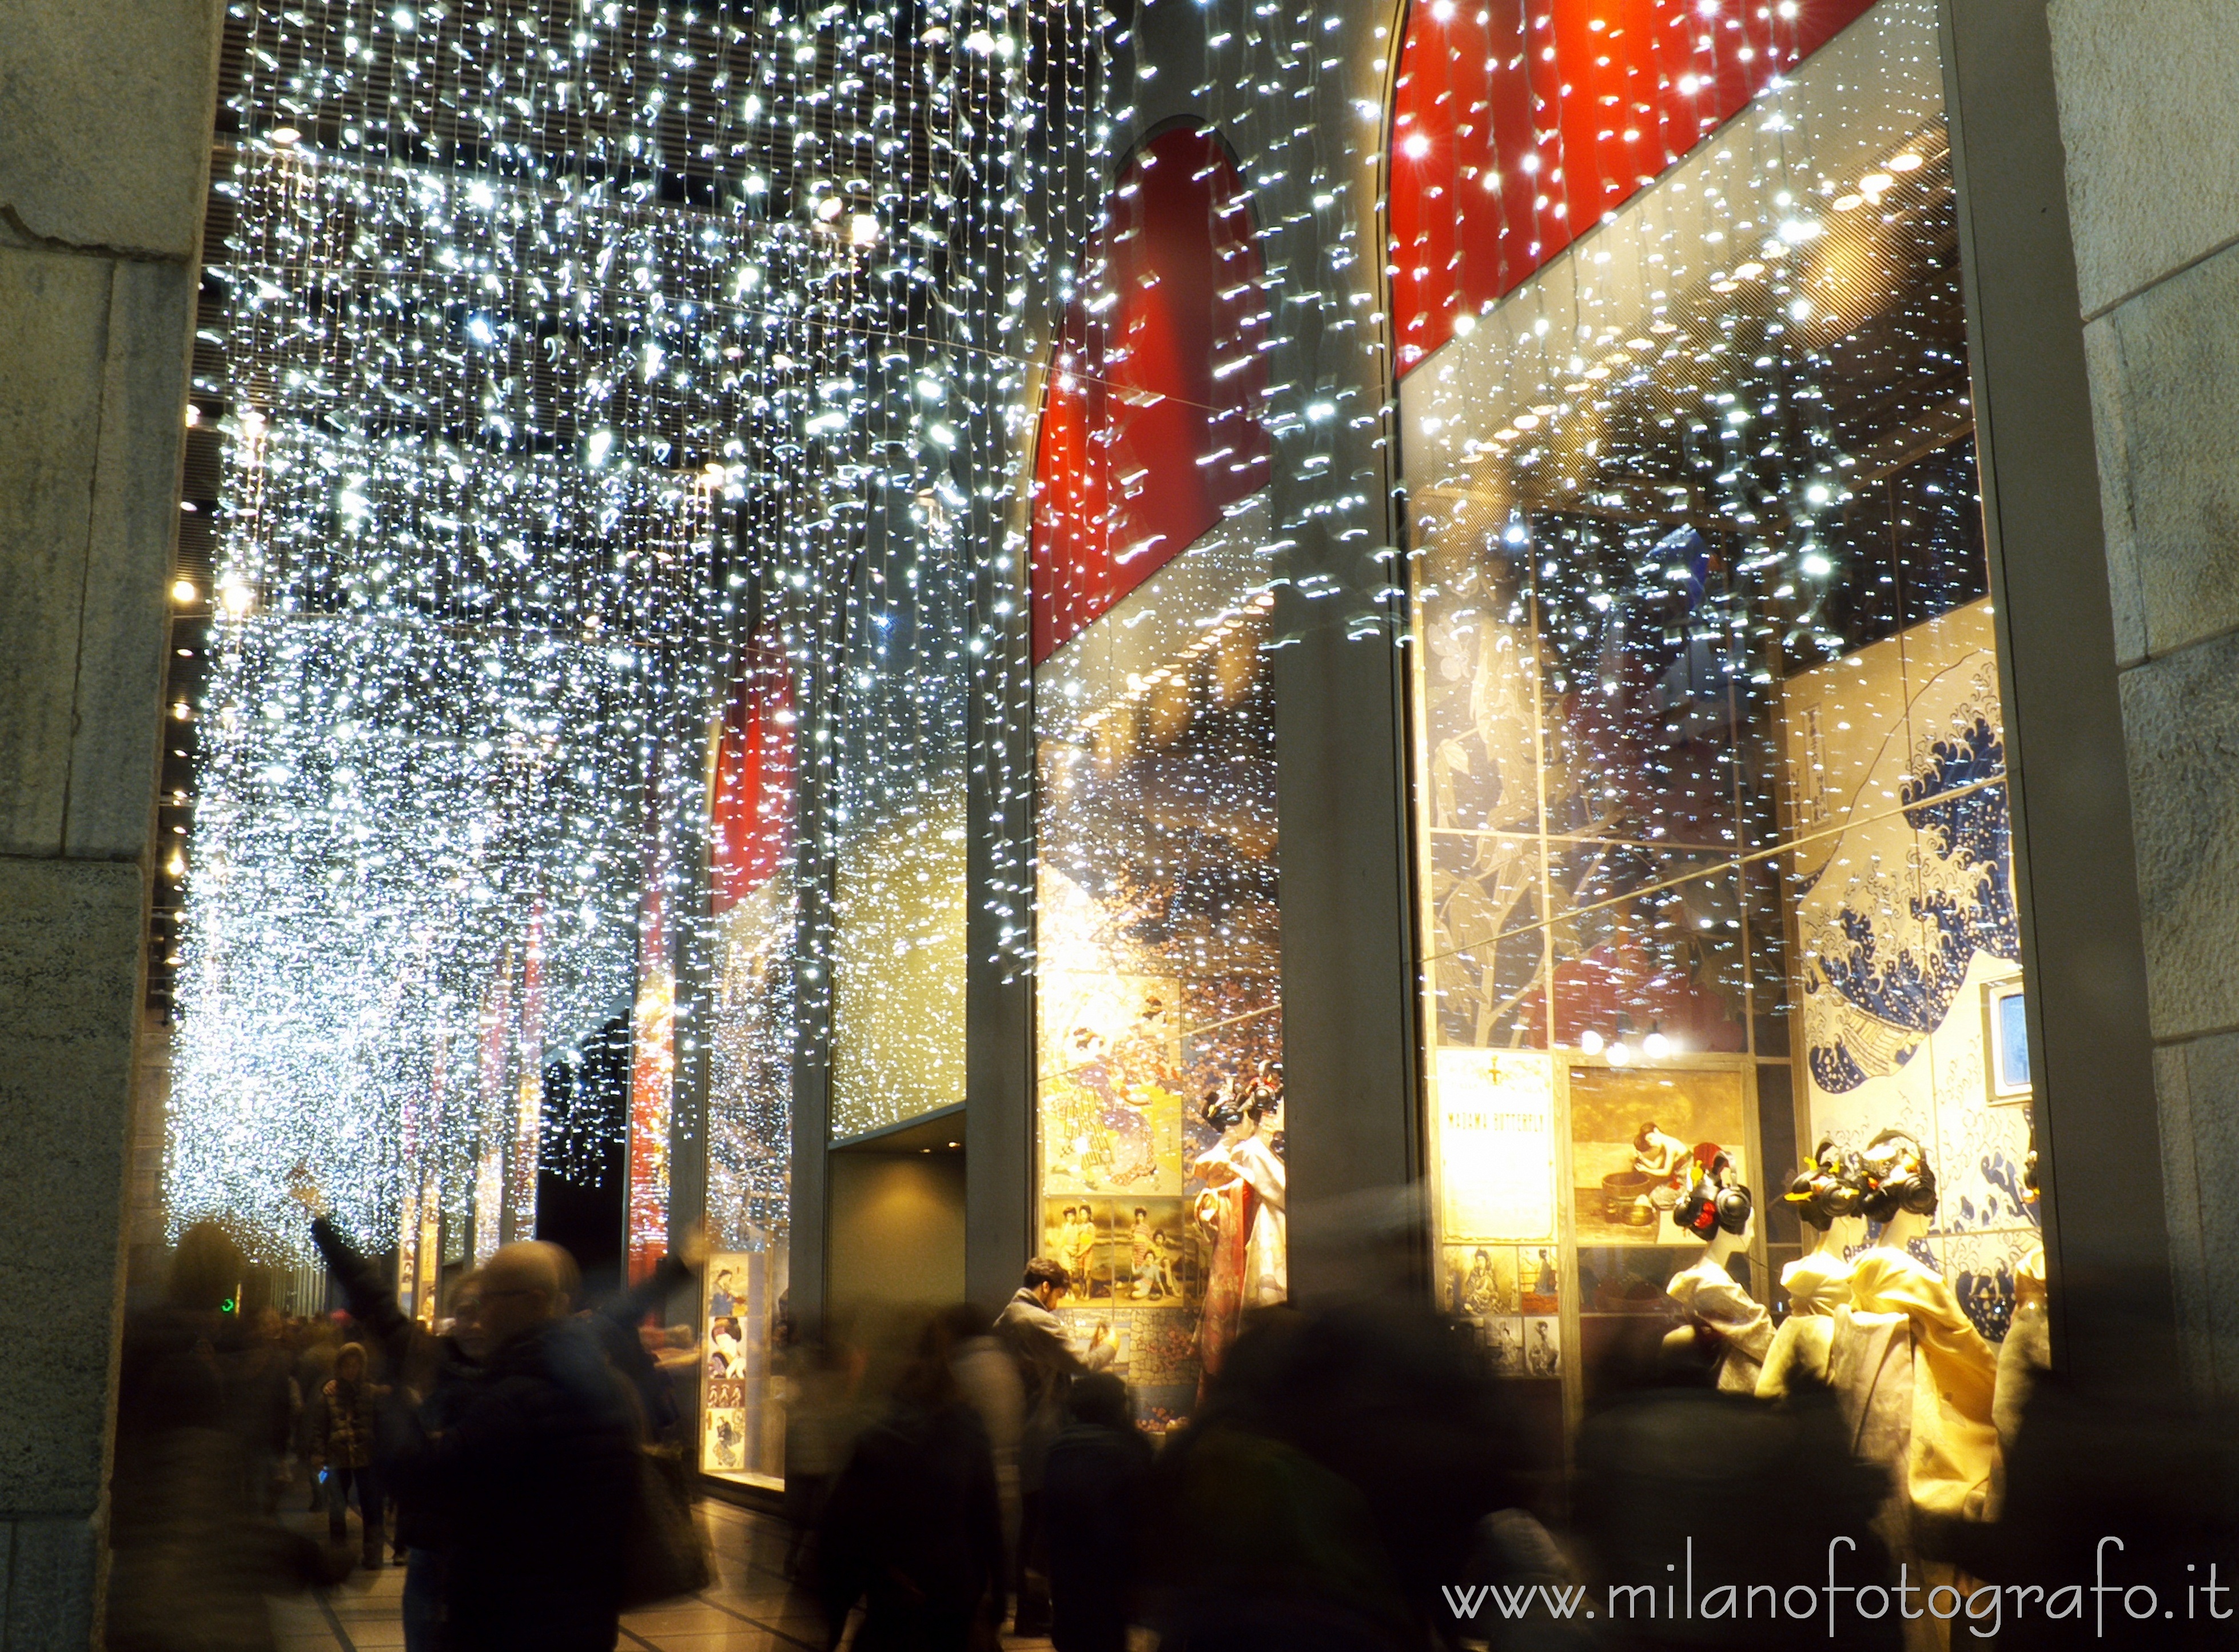 Milano: La gente a passeggio davanti alla Rinascente allestita per il Natale - Milano